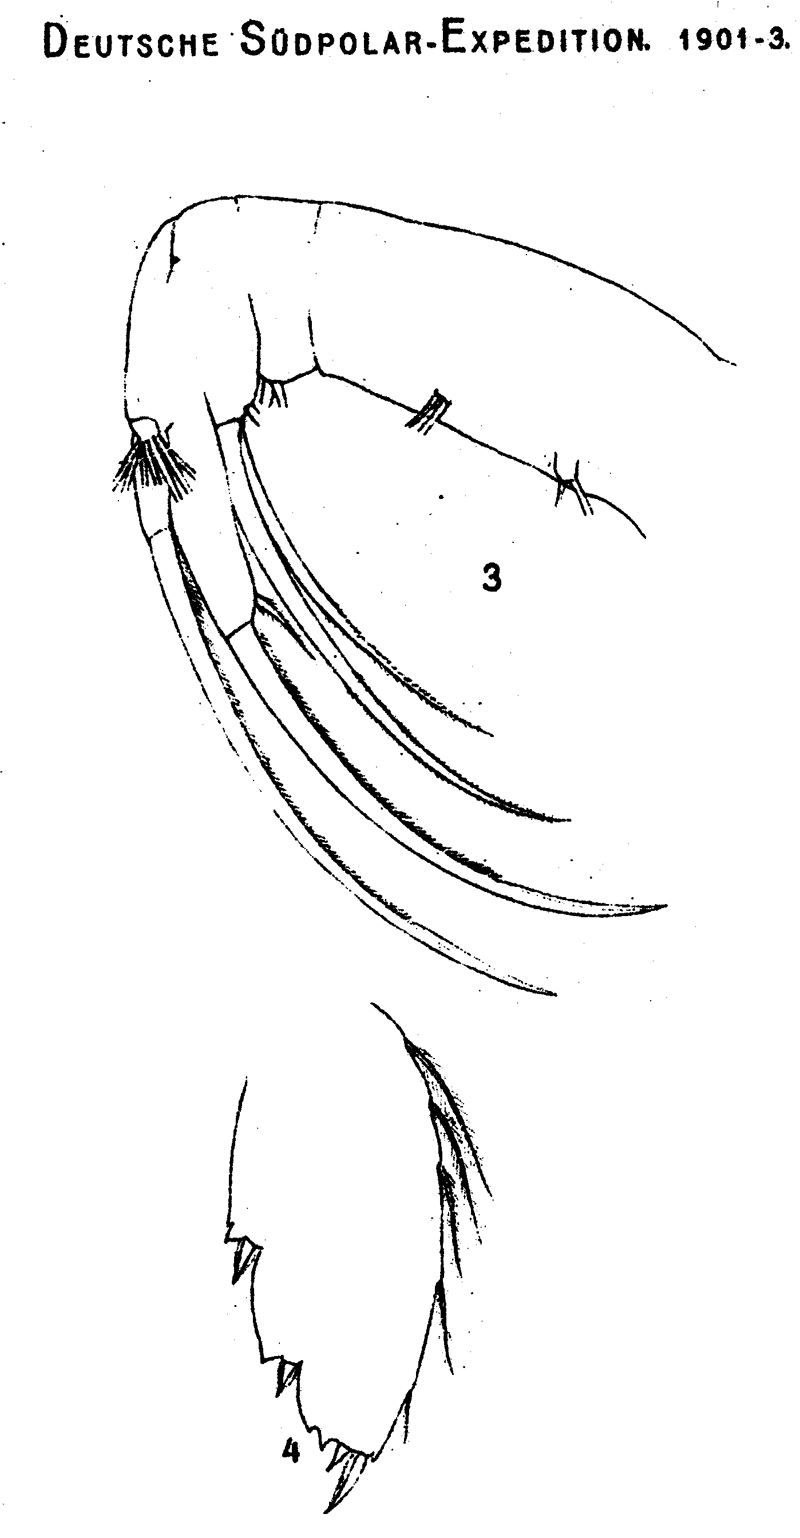 Espèce Paraheterorhabdus (Paraheterorhabdus) farrani - Planche 7 de figures morphologiques